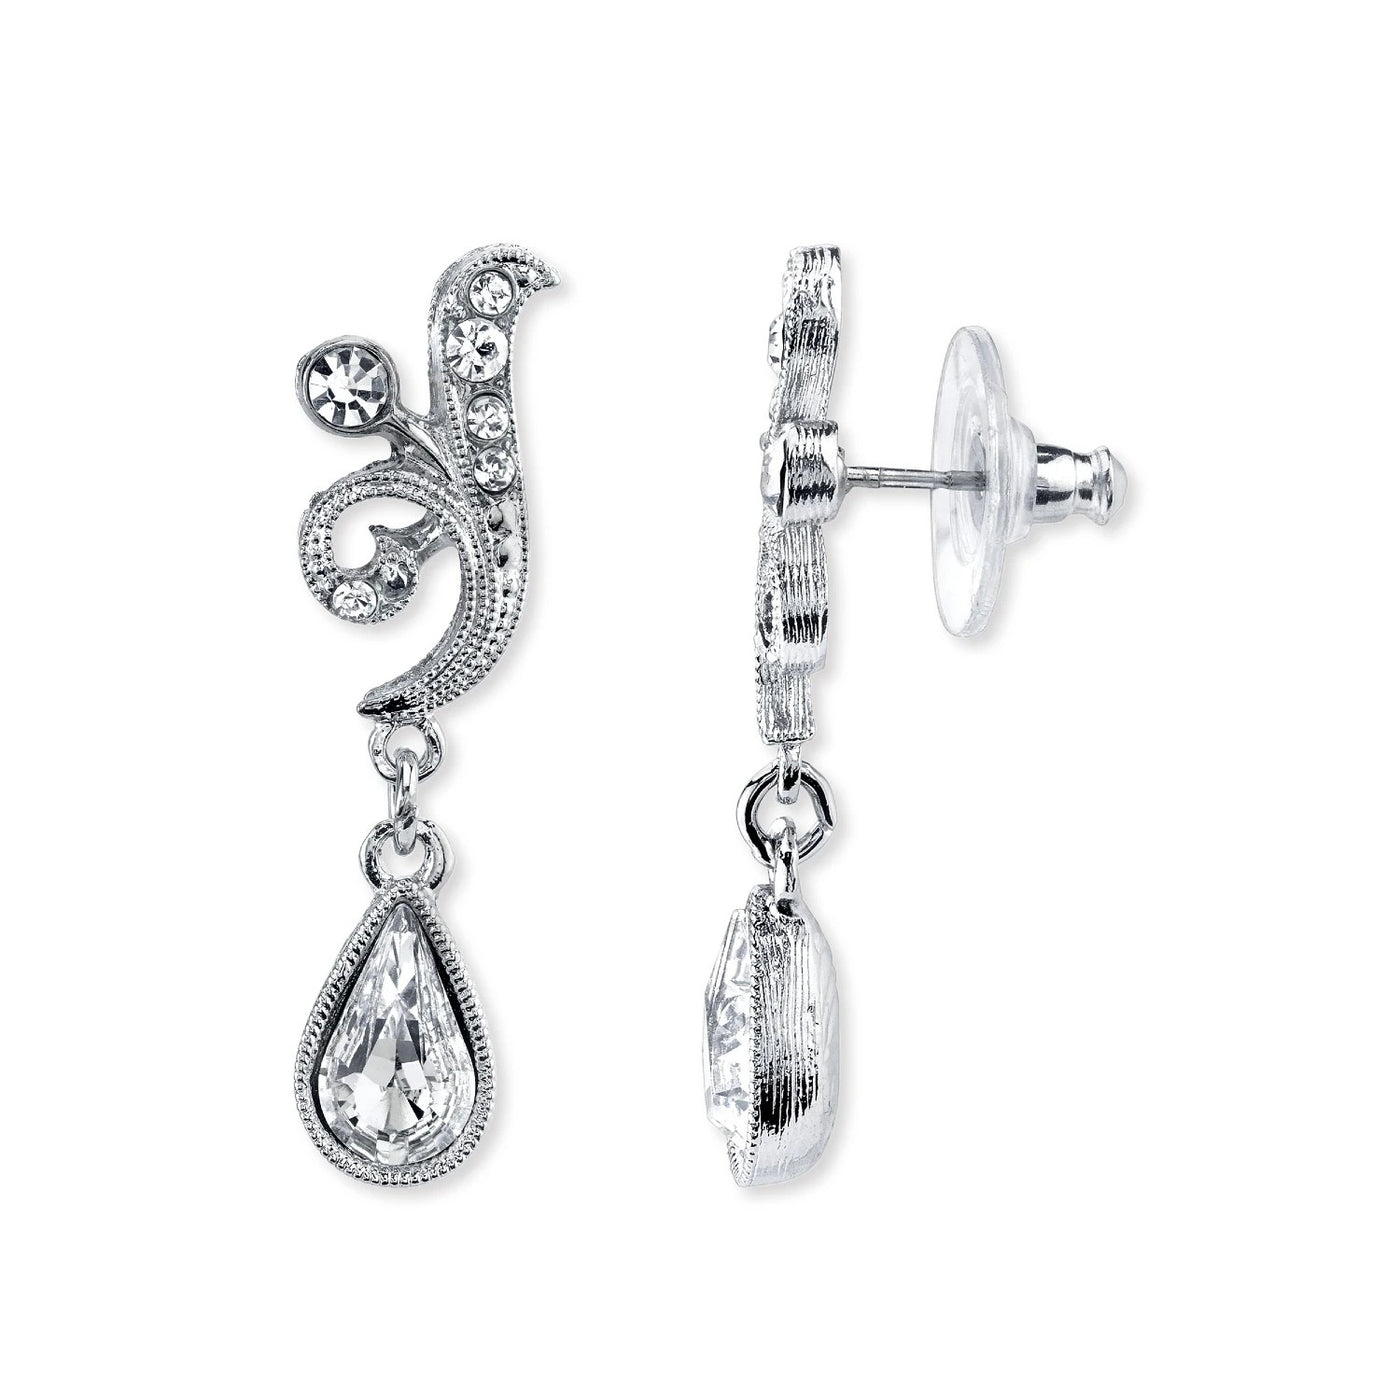 Downton Abbey Silver Tone Crystal Teardrop Earrings by 1928 Jewelry